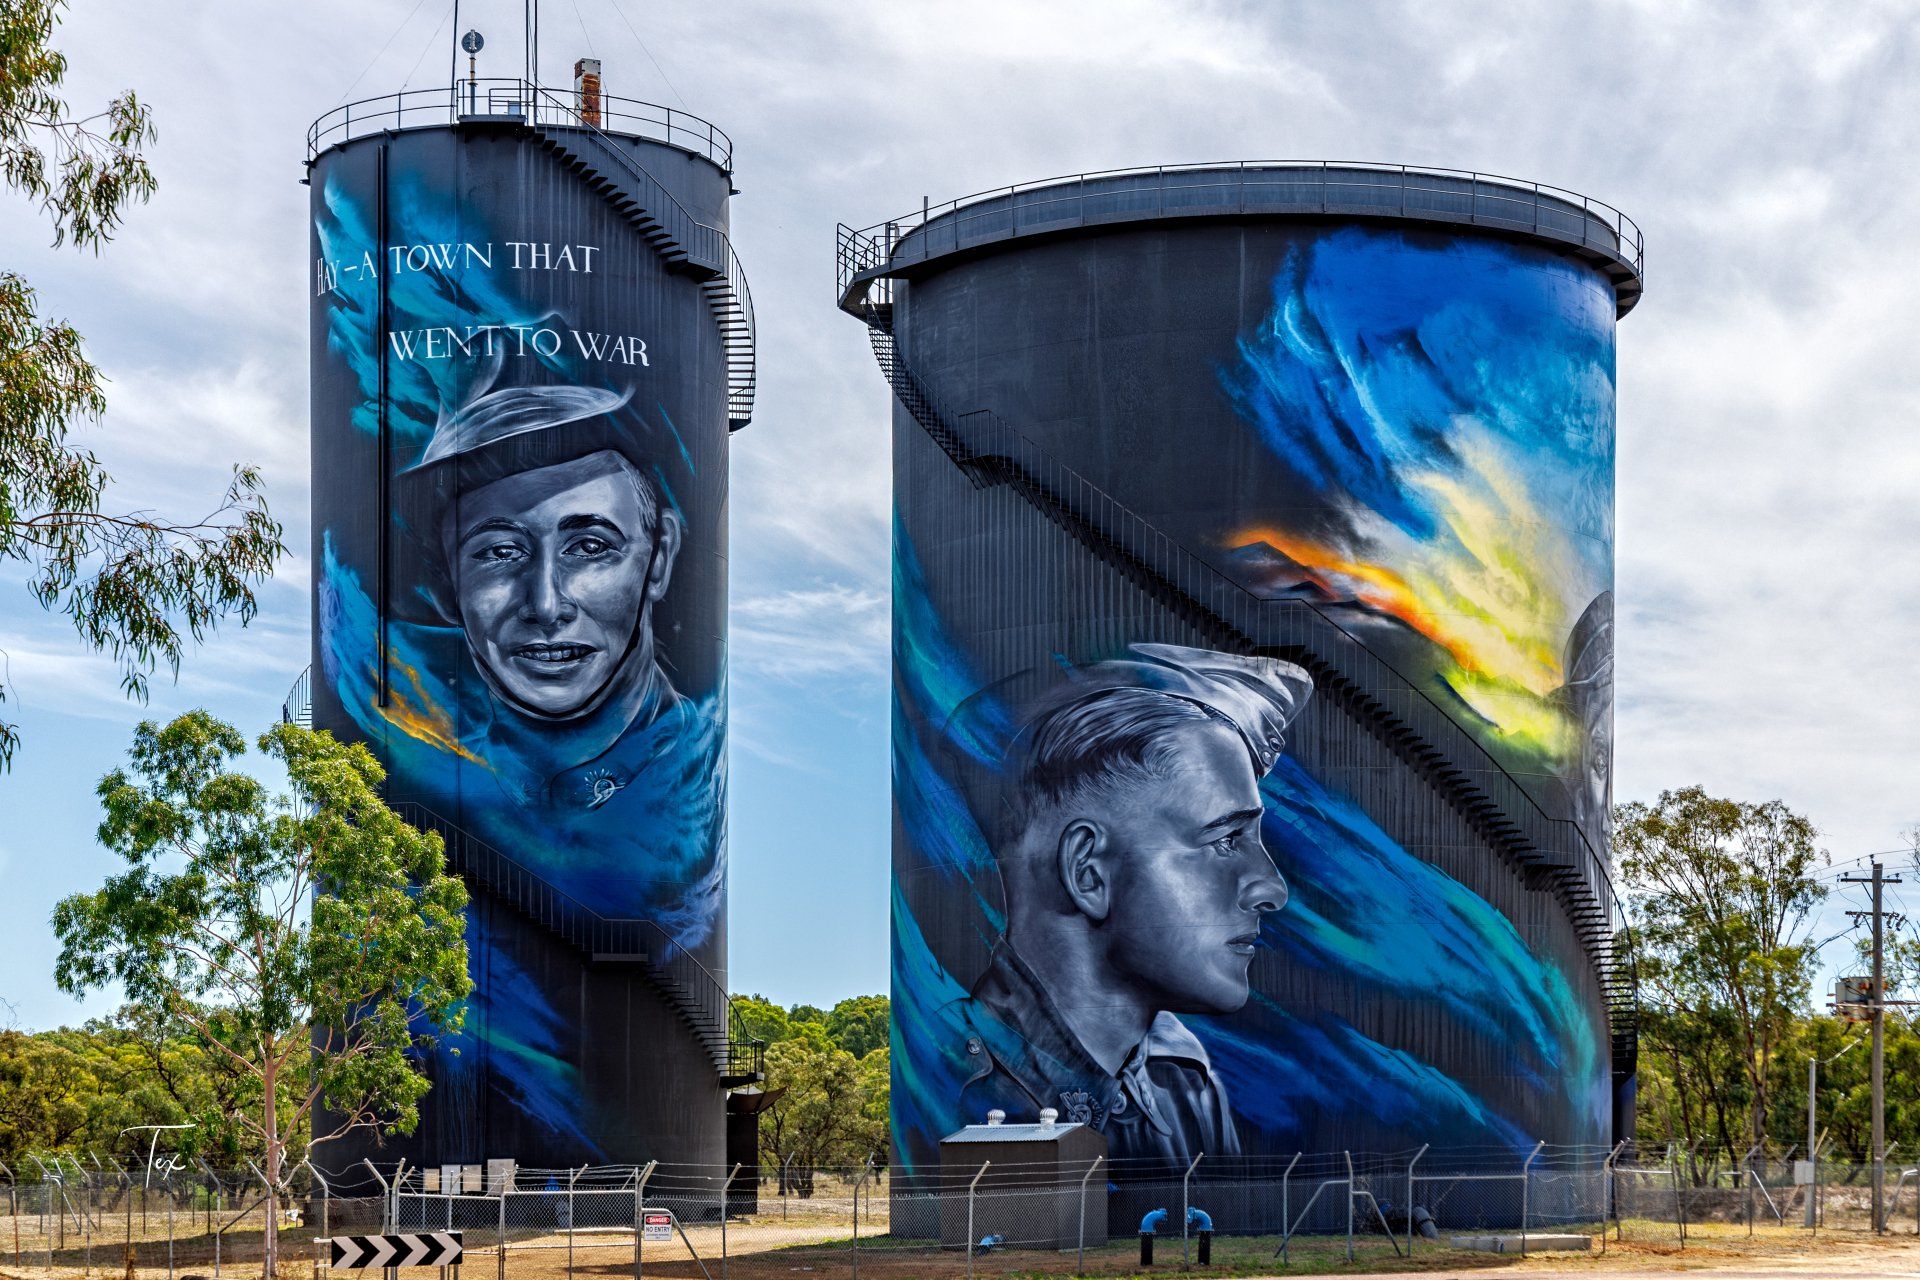 Hey Water Tower Art, Australian Silo Art Trail